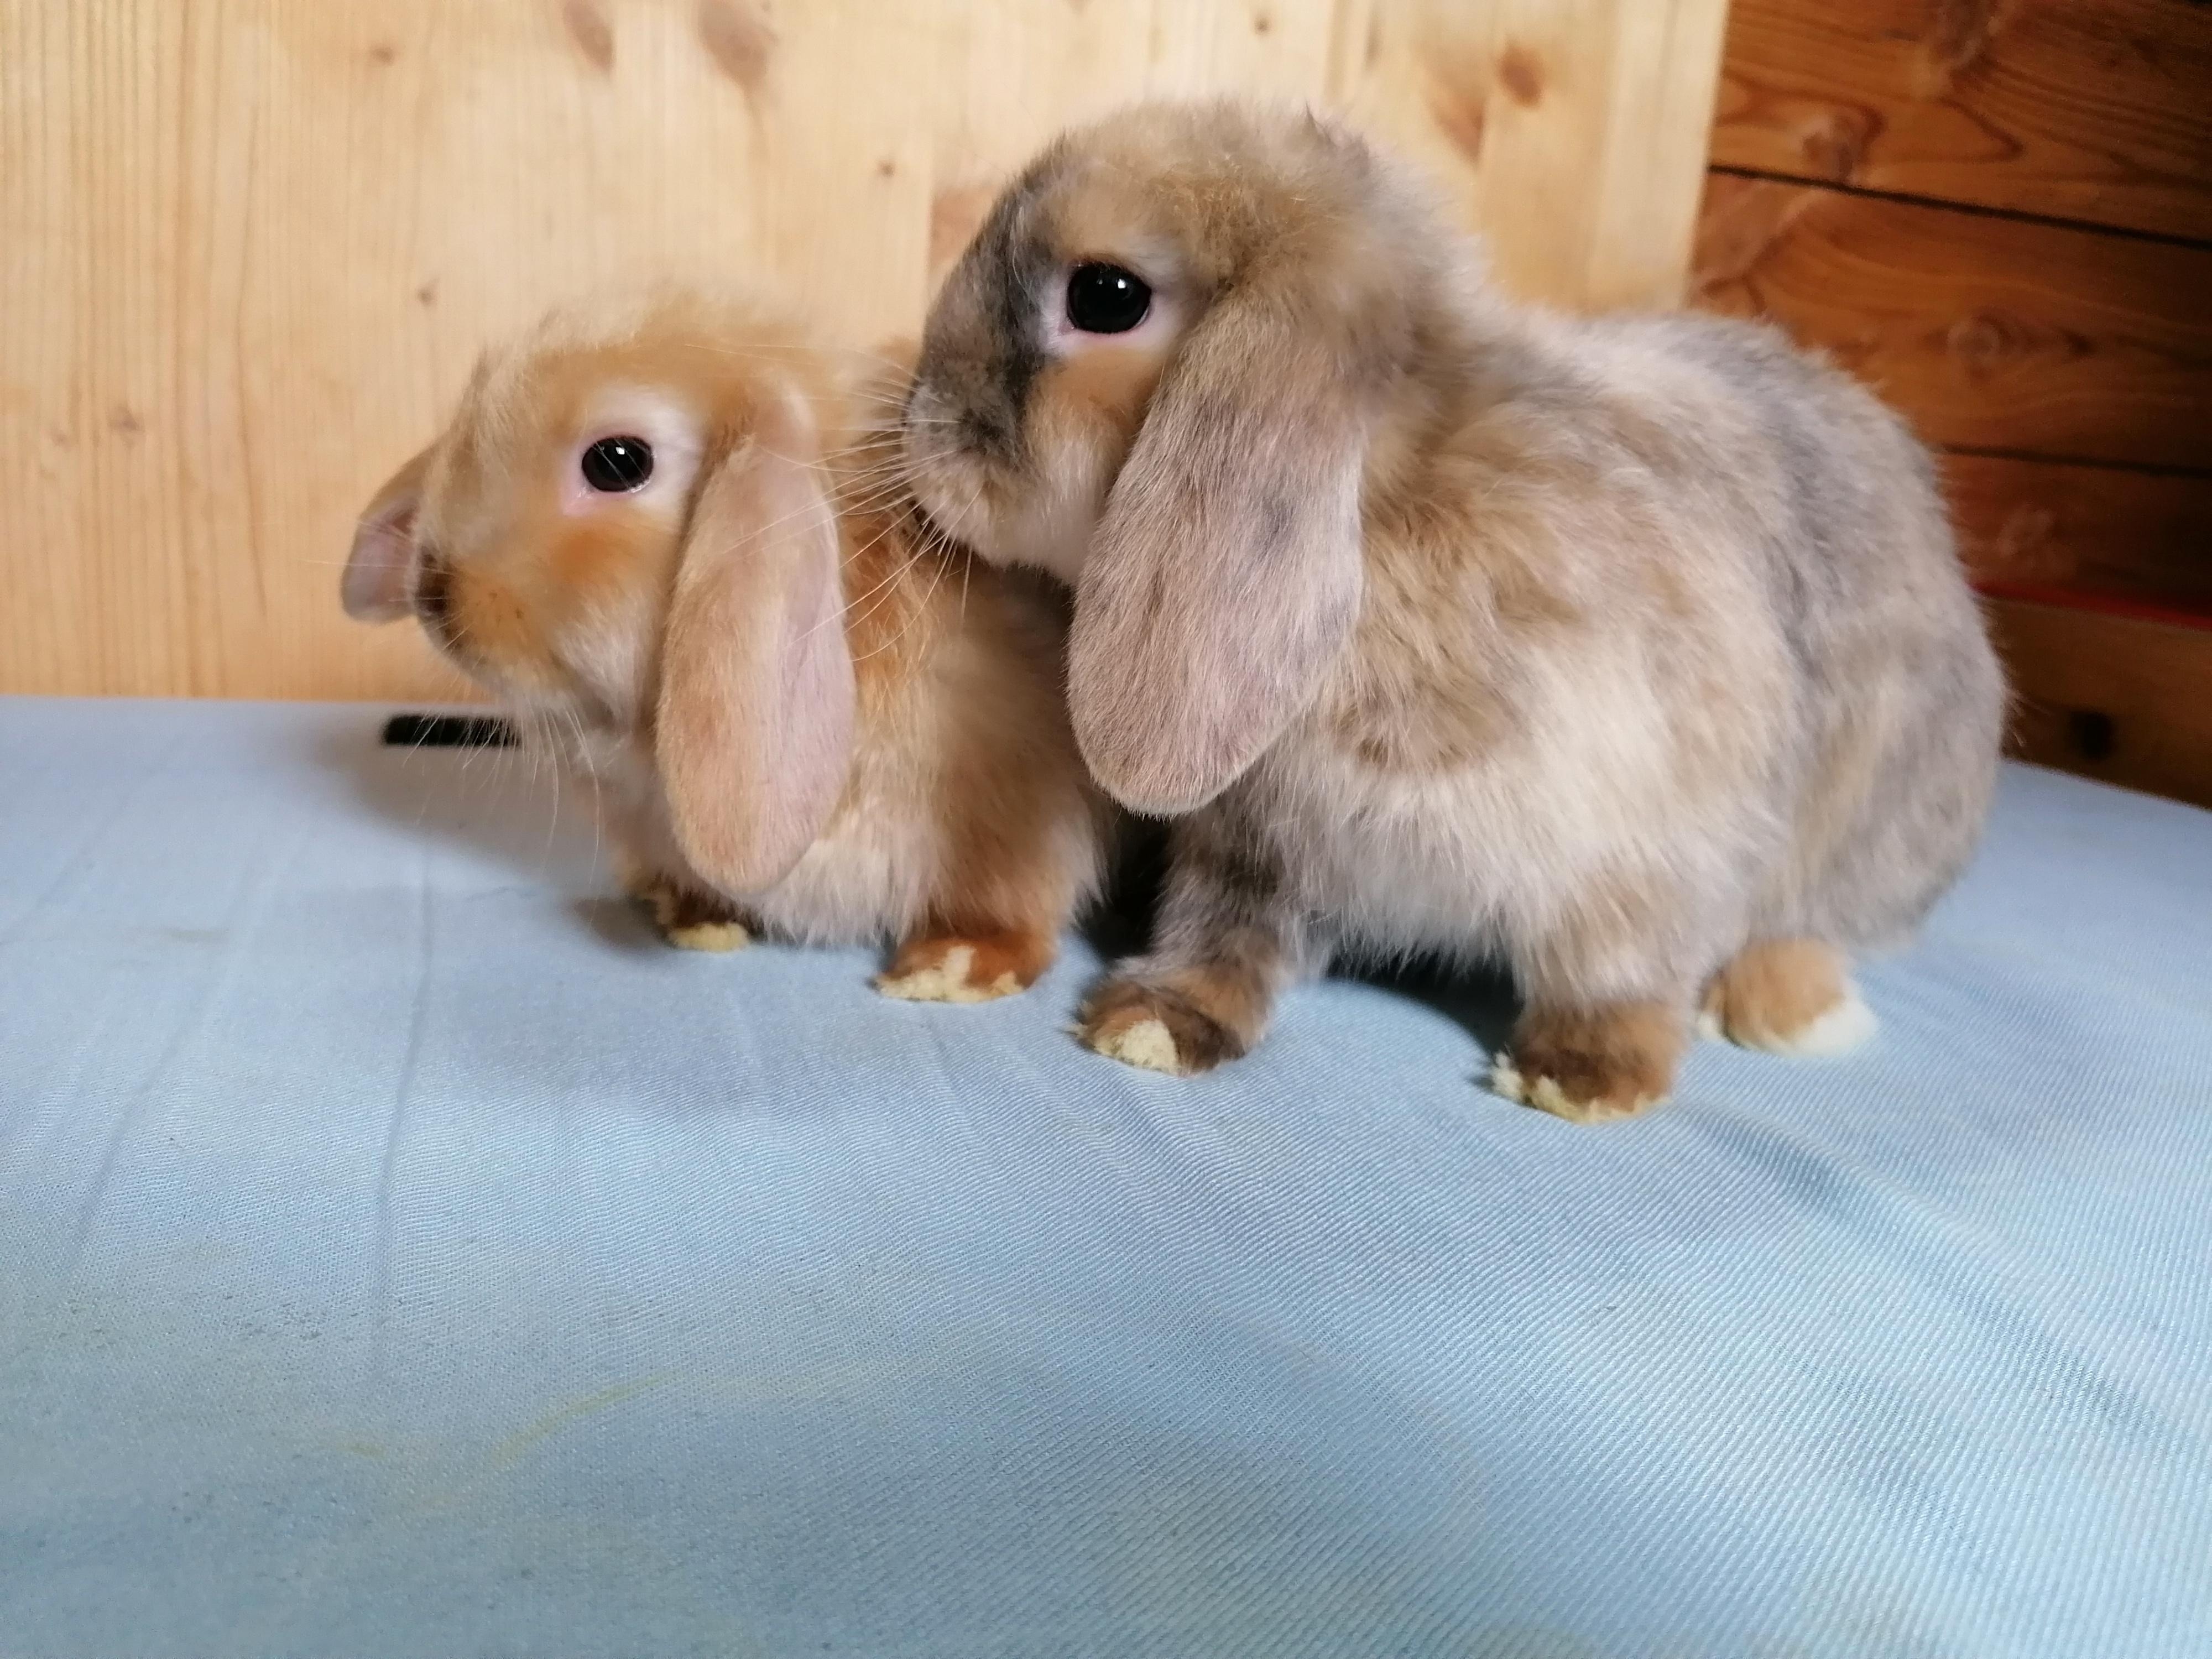 Unser neuer Familienzuwachs #rabbit #kaninchen